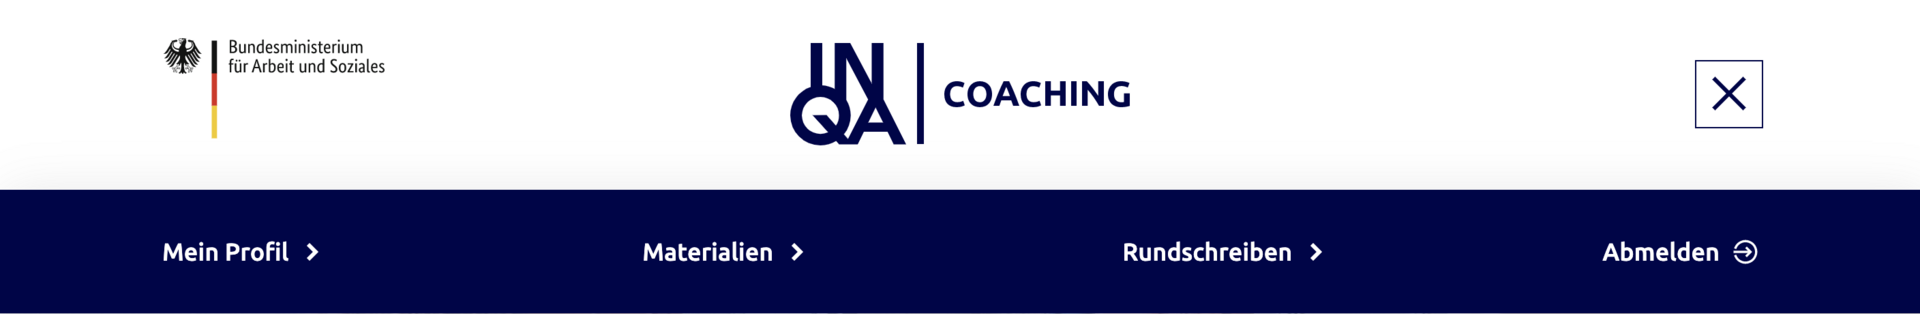 Kopfbereich der Internetseite INQA-Coaching mit Meta- und Hauptnavigation